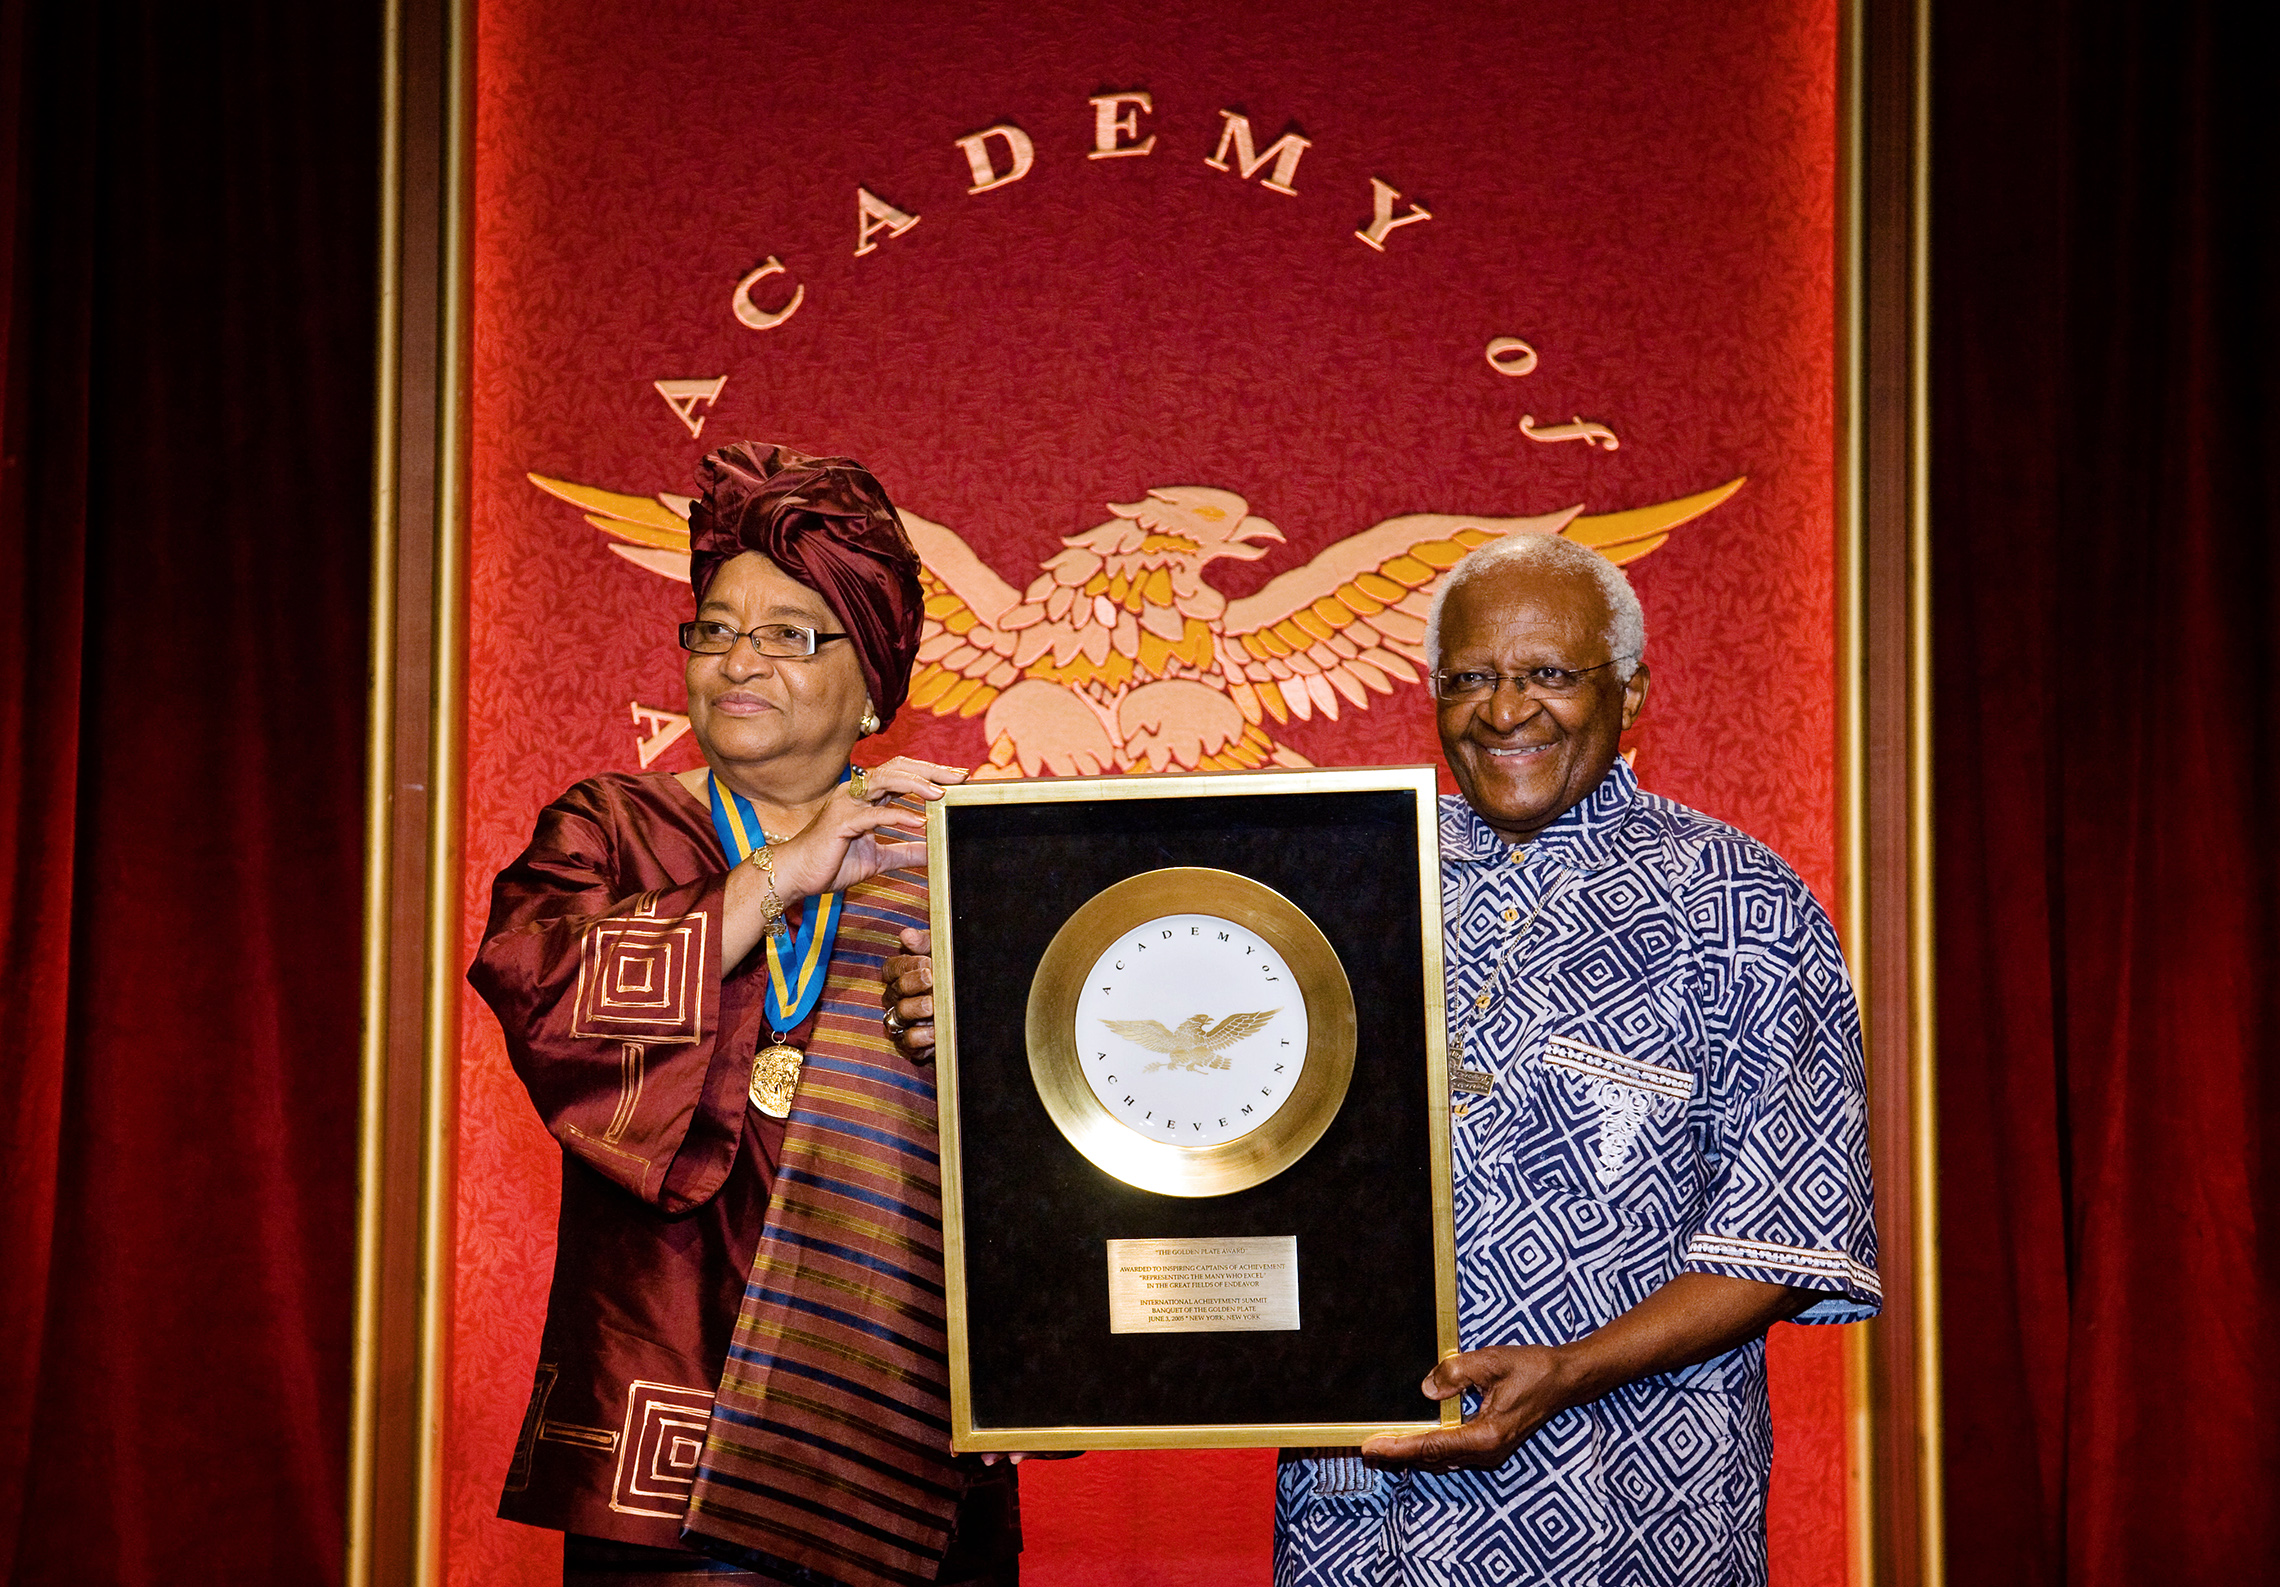 a Dél-afrikai Desmond Tutu Emeritus érsek a 2008-as Hawaii nemzetközi Achievement csúcstalálkozón bemutatja Libéria elnökének, Ellen Johnson Sirleafnak az aranylemez-díjat. (©Academy of Achievement)